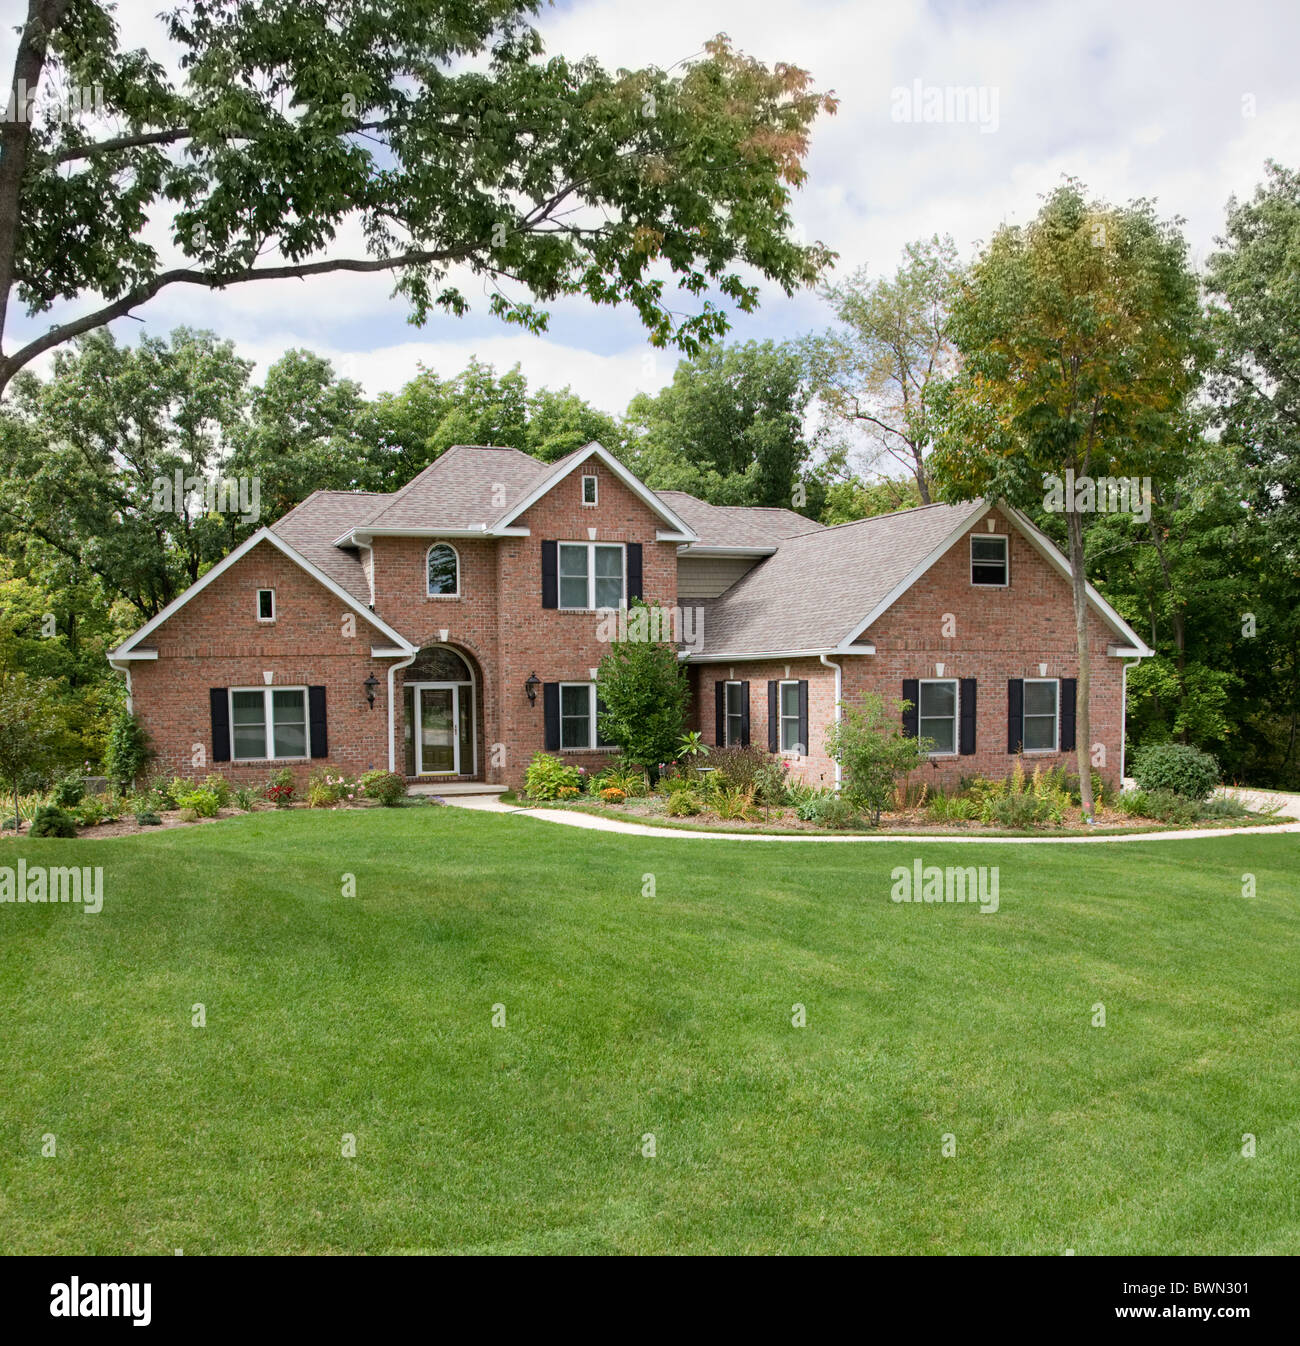 USA, Illinois, Metamora, Exterior of large suburban house Stock Photo